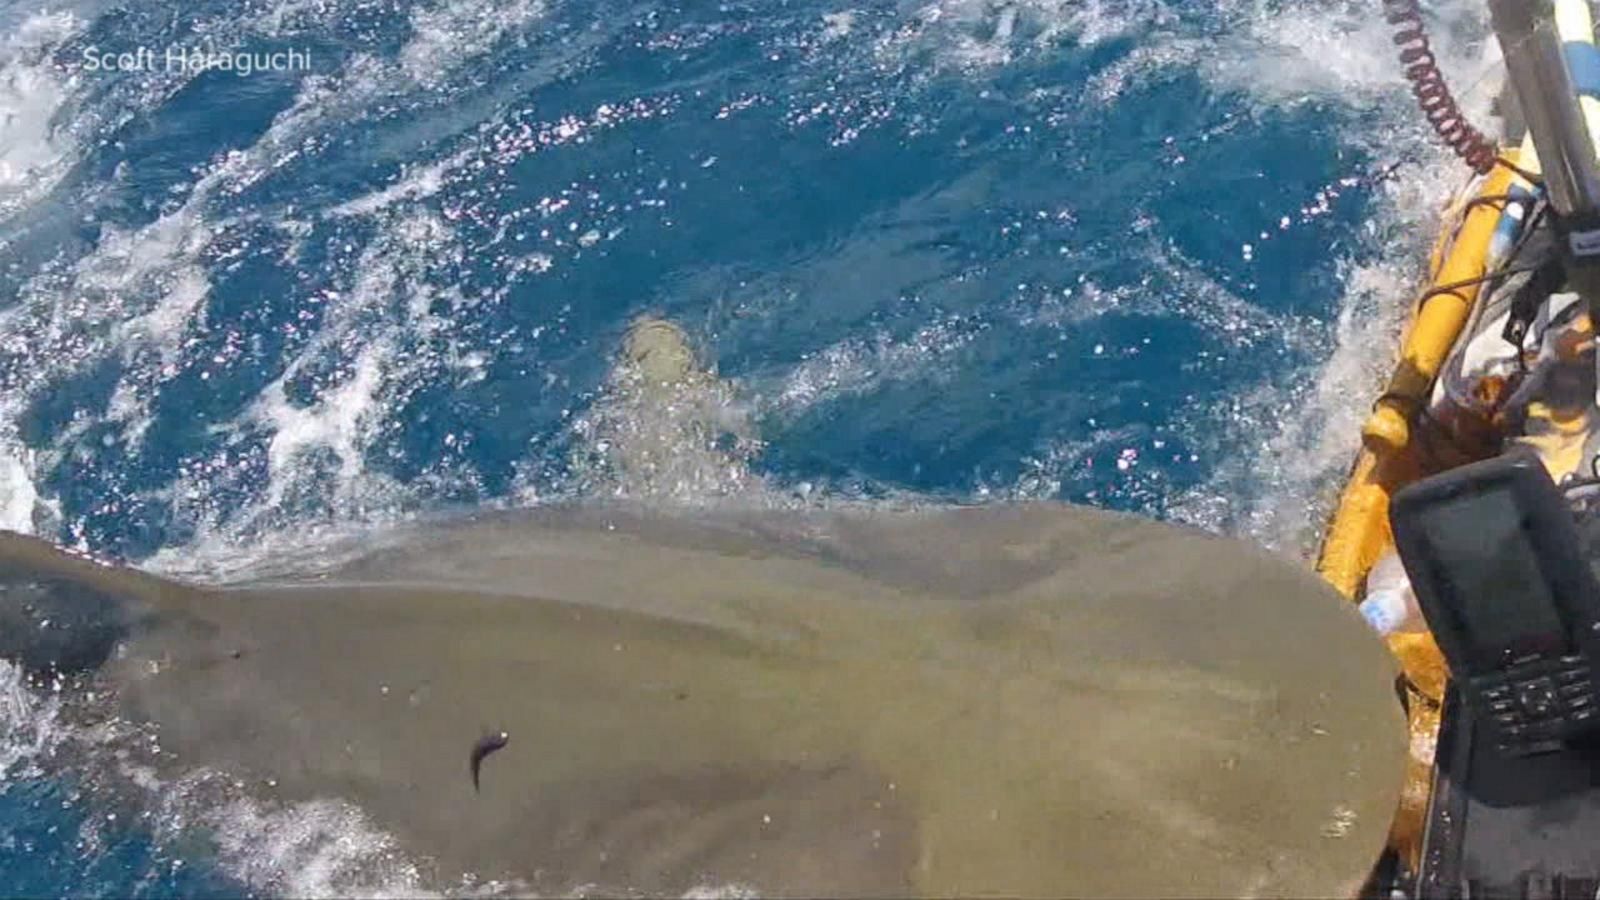 Fisherman fights off shark off Hawaii coast - Good Morning America